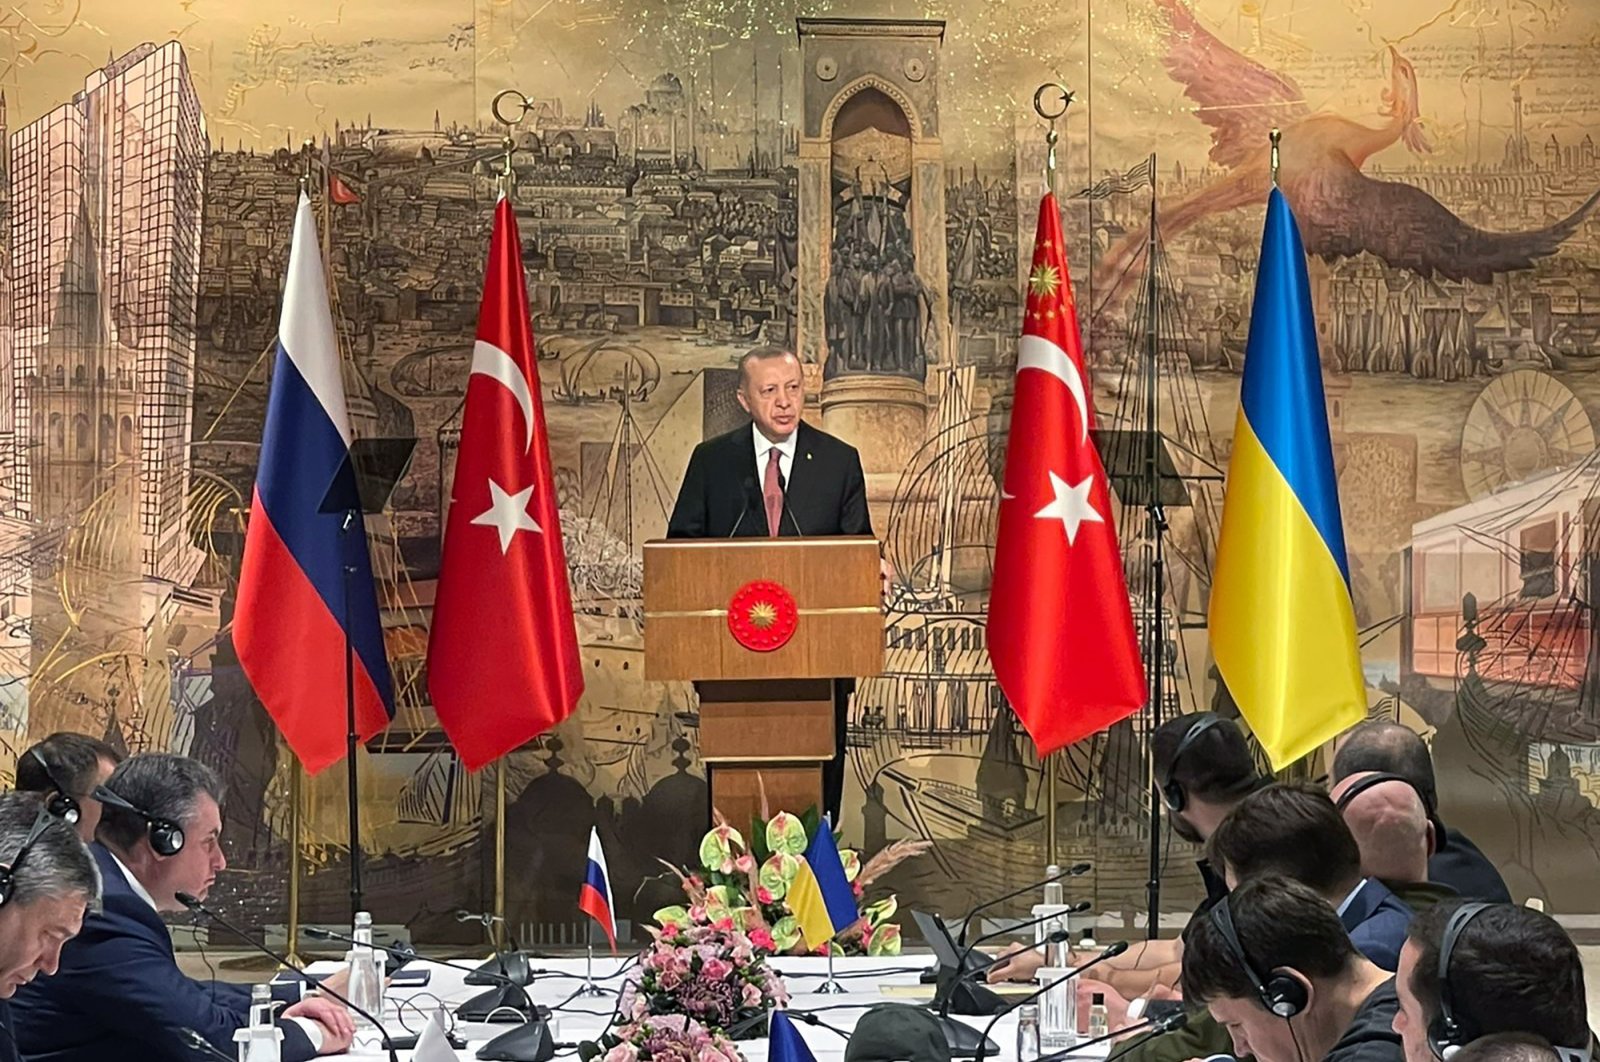 Turki menentang retorika kebijakan luar negeri Perang Dingin 2 dimensi